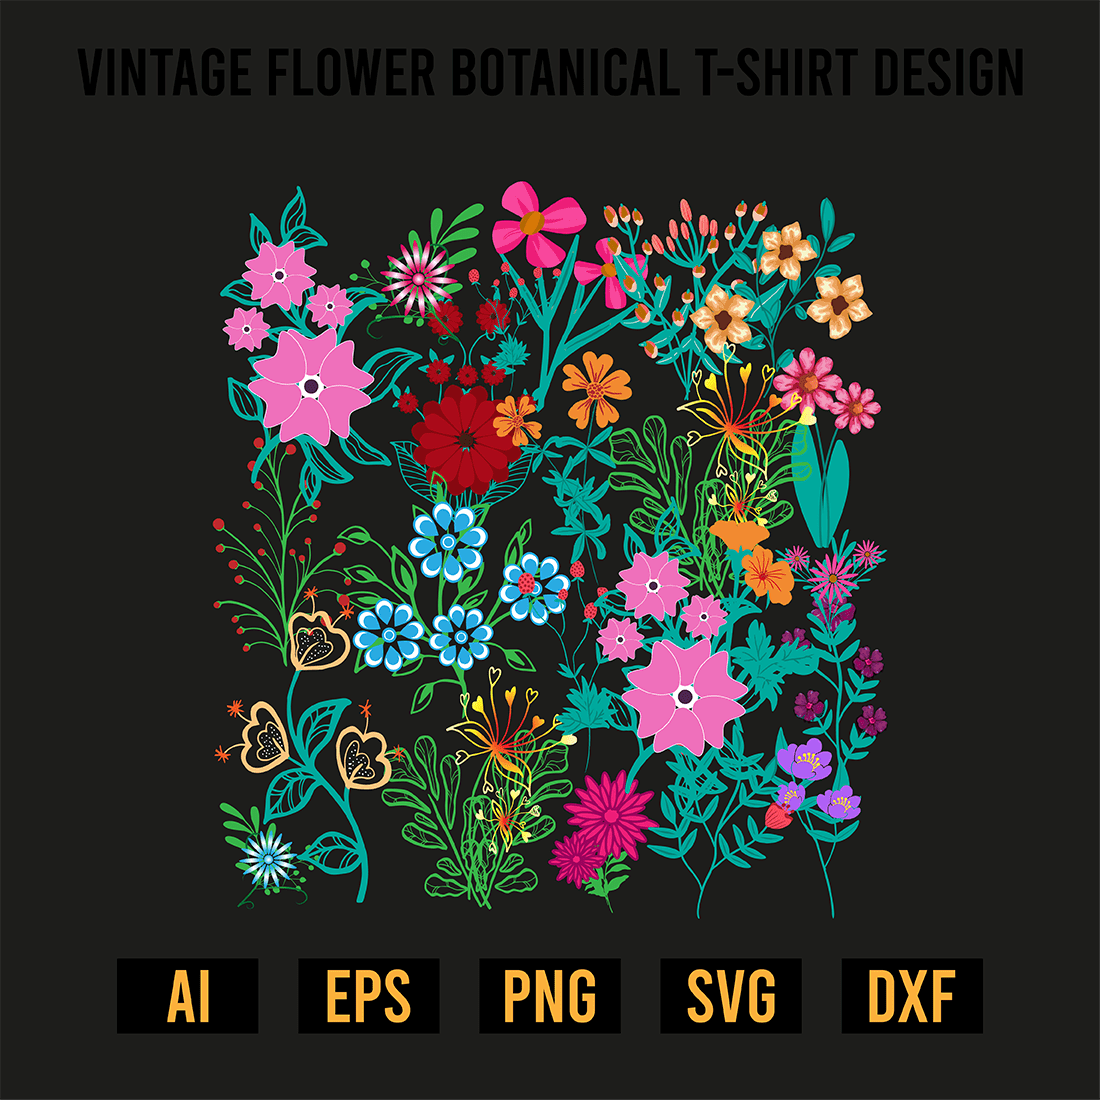 Vintage Flower Botanical T-Shirt Design preview image.